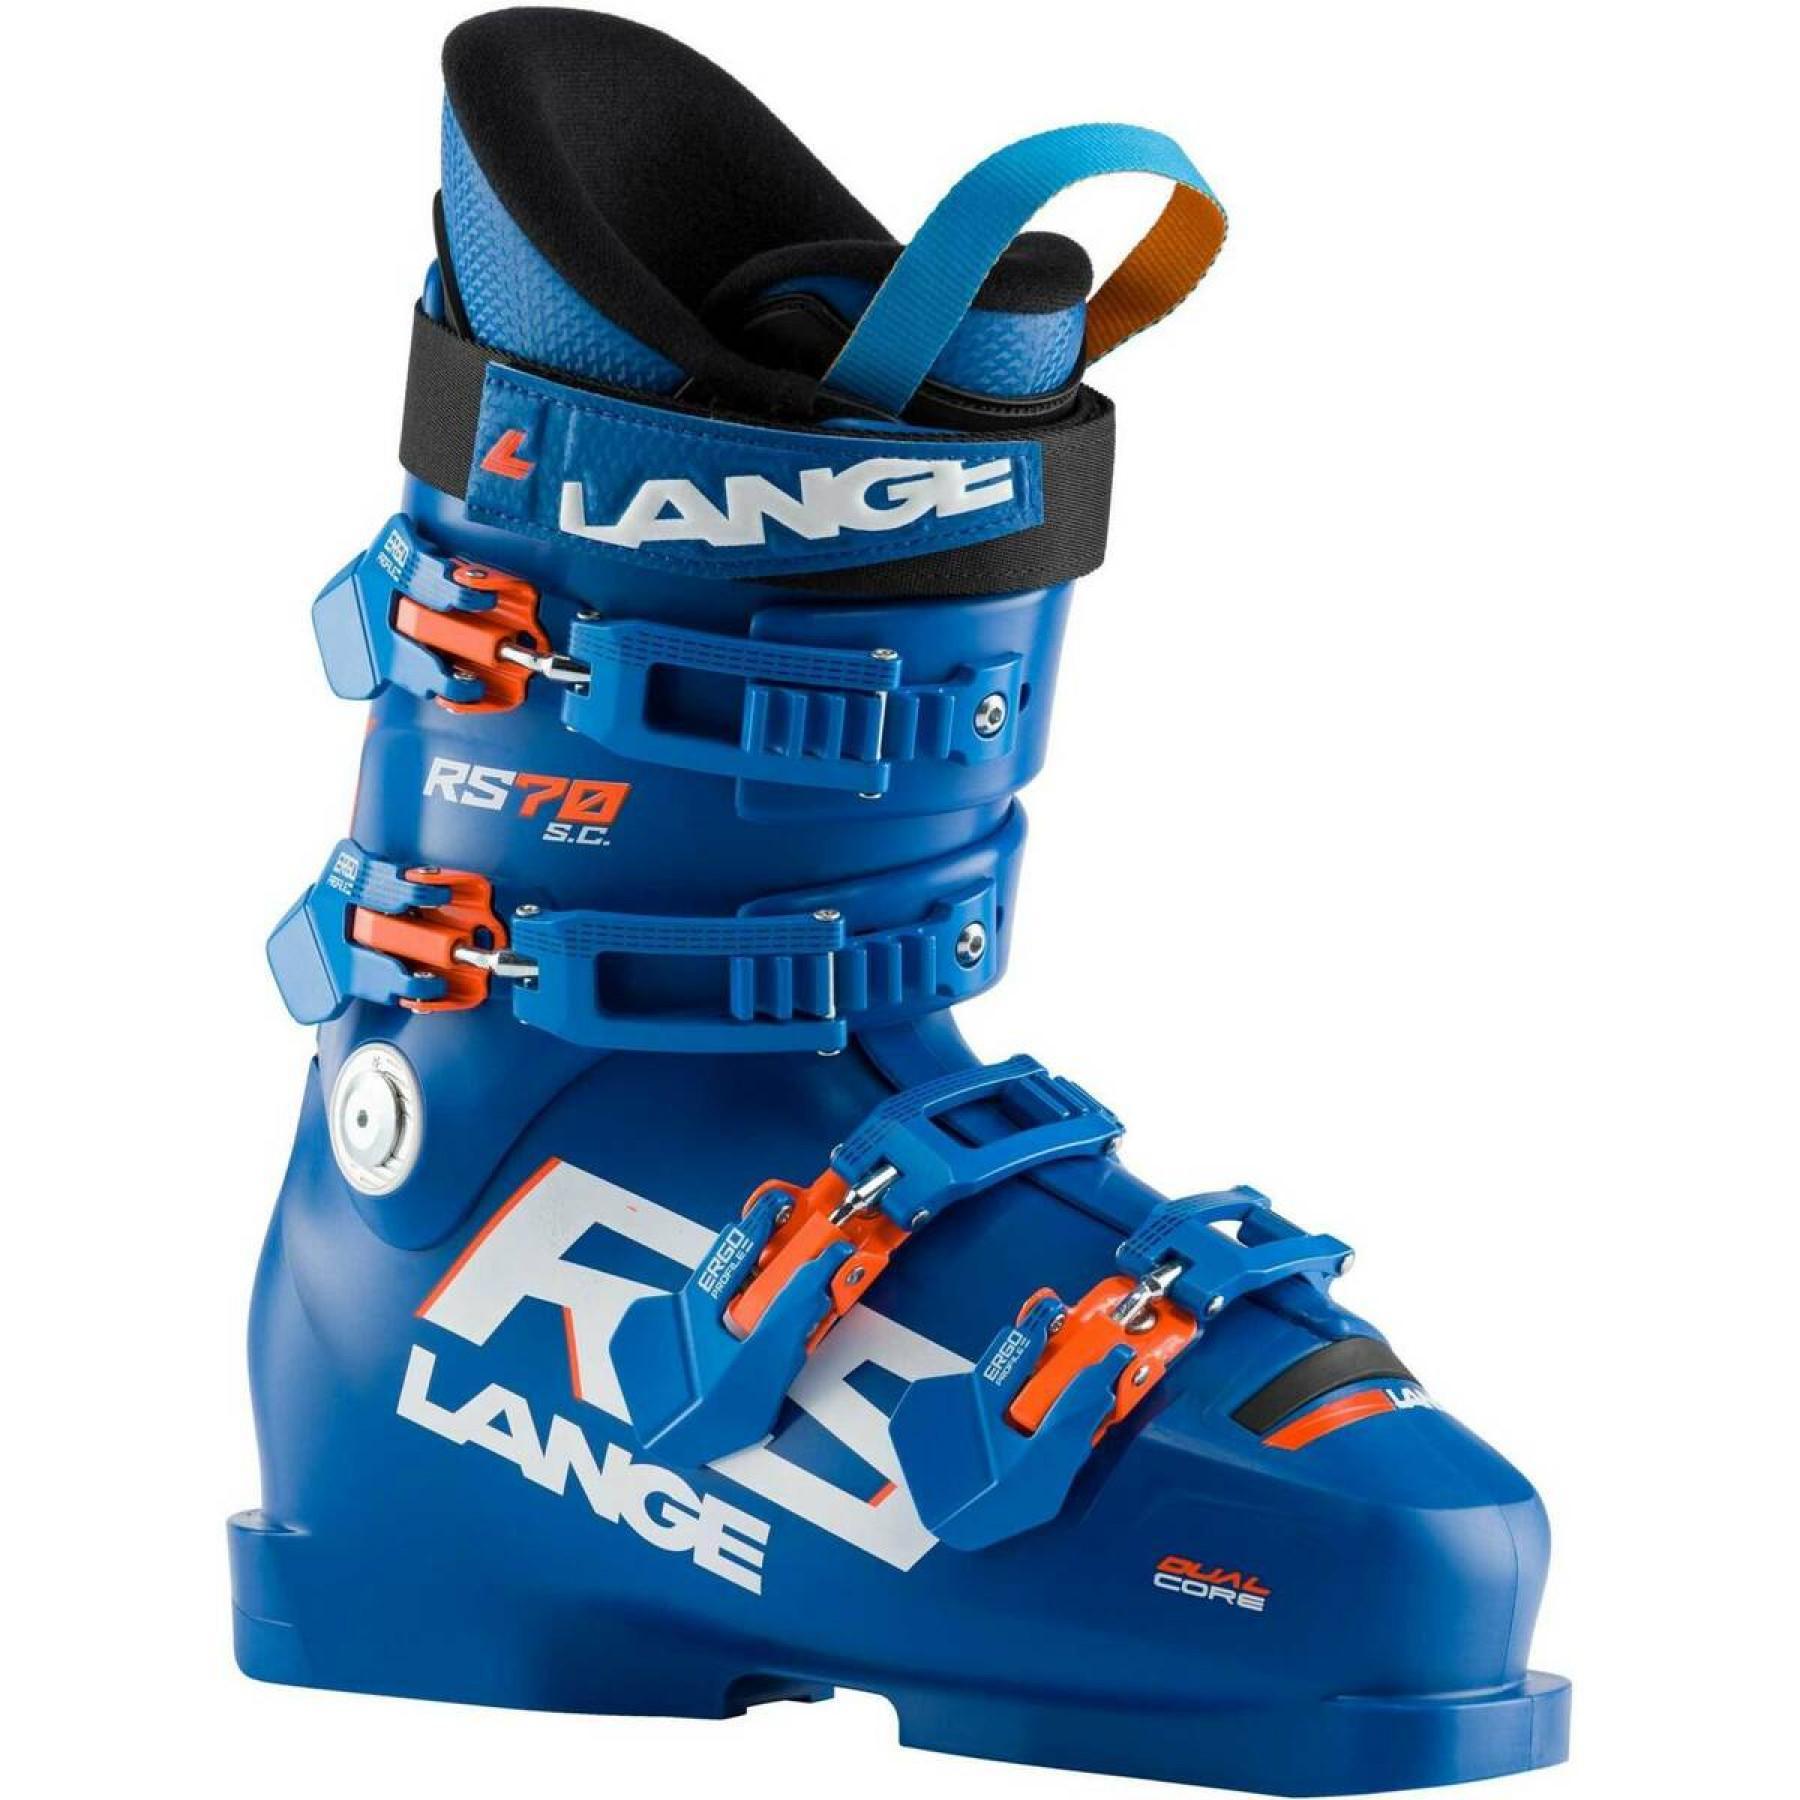 Zapatillas de esquí niños Lange rs 70 s.c.